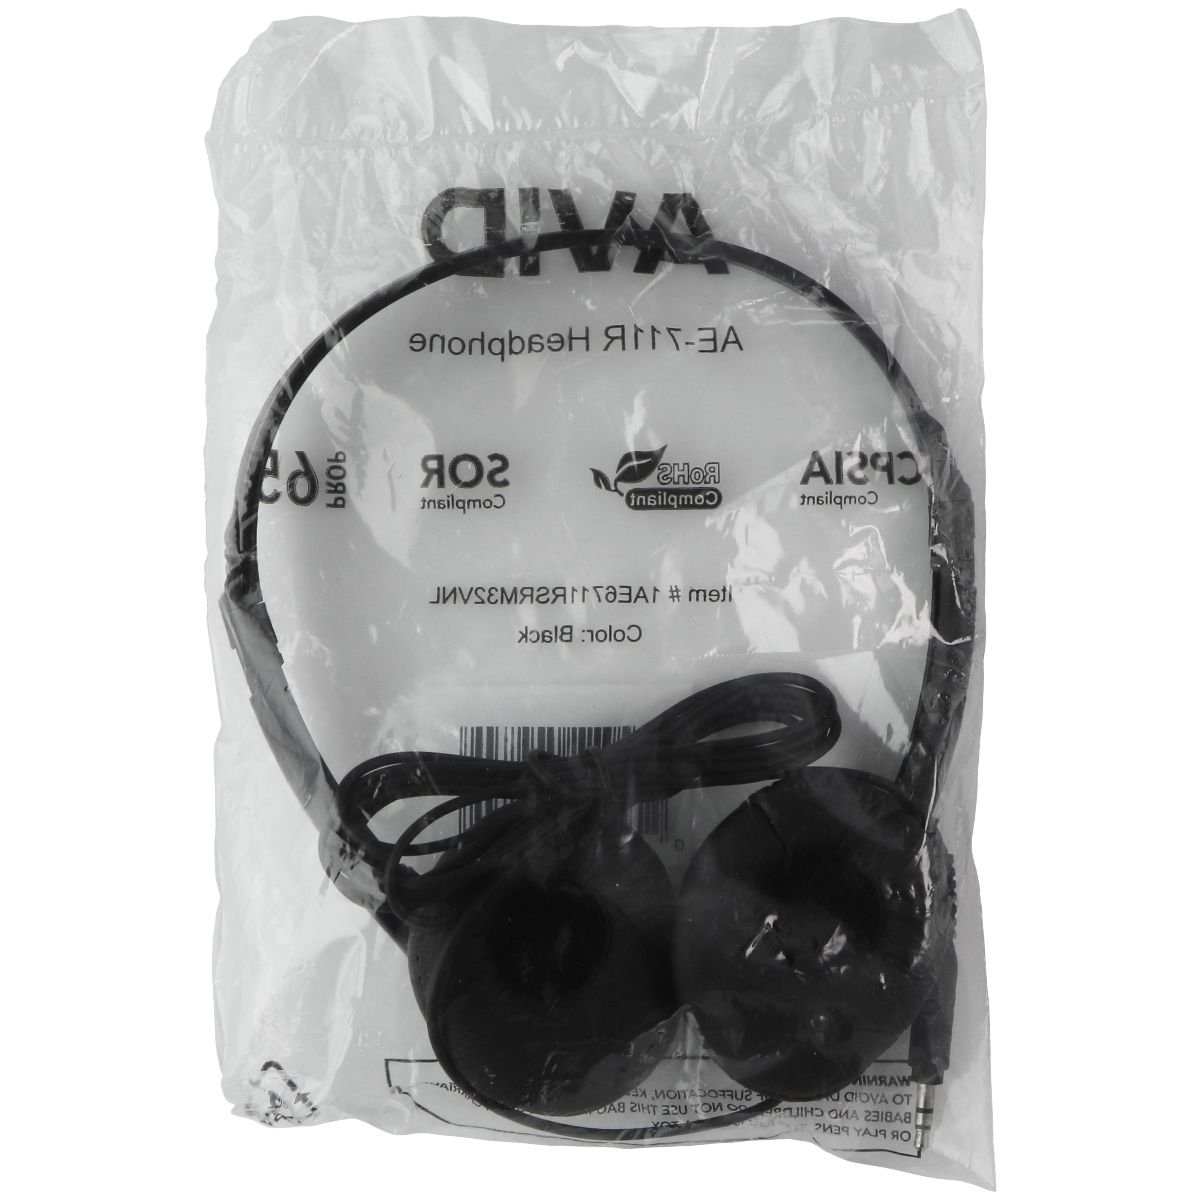 AVID (AE-711R) Wired 3.5mm On-Ear Headphones - Black (Refurbished)